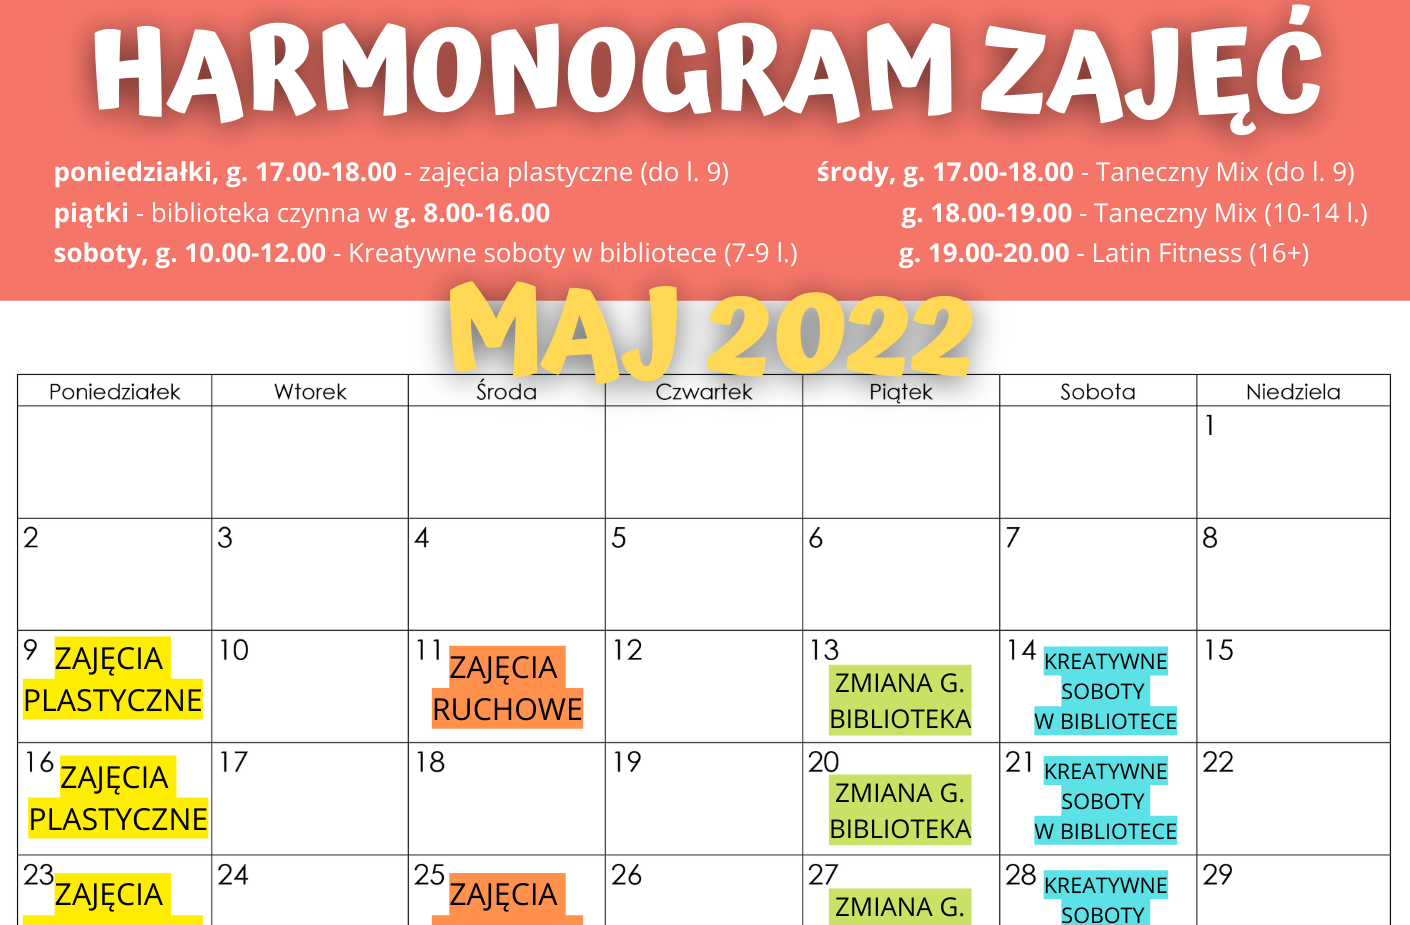 HARMONOGRAM ZAJĘĆ STAŁYCH MAJ 2022.png